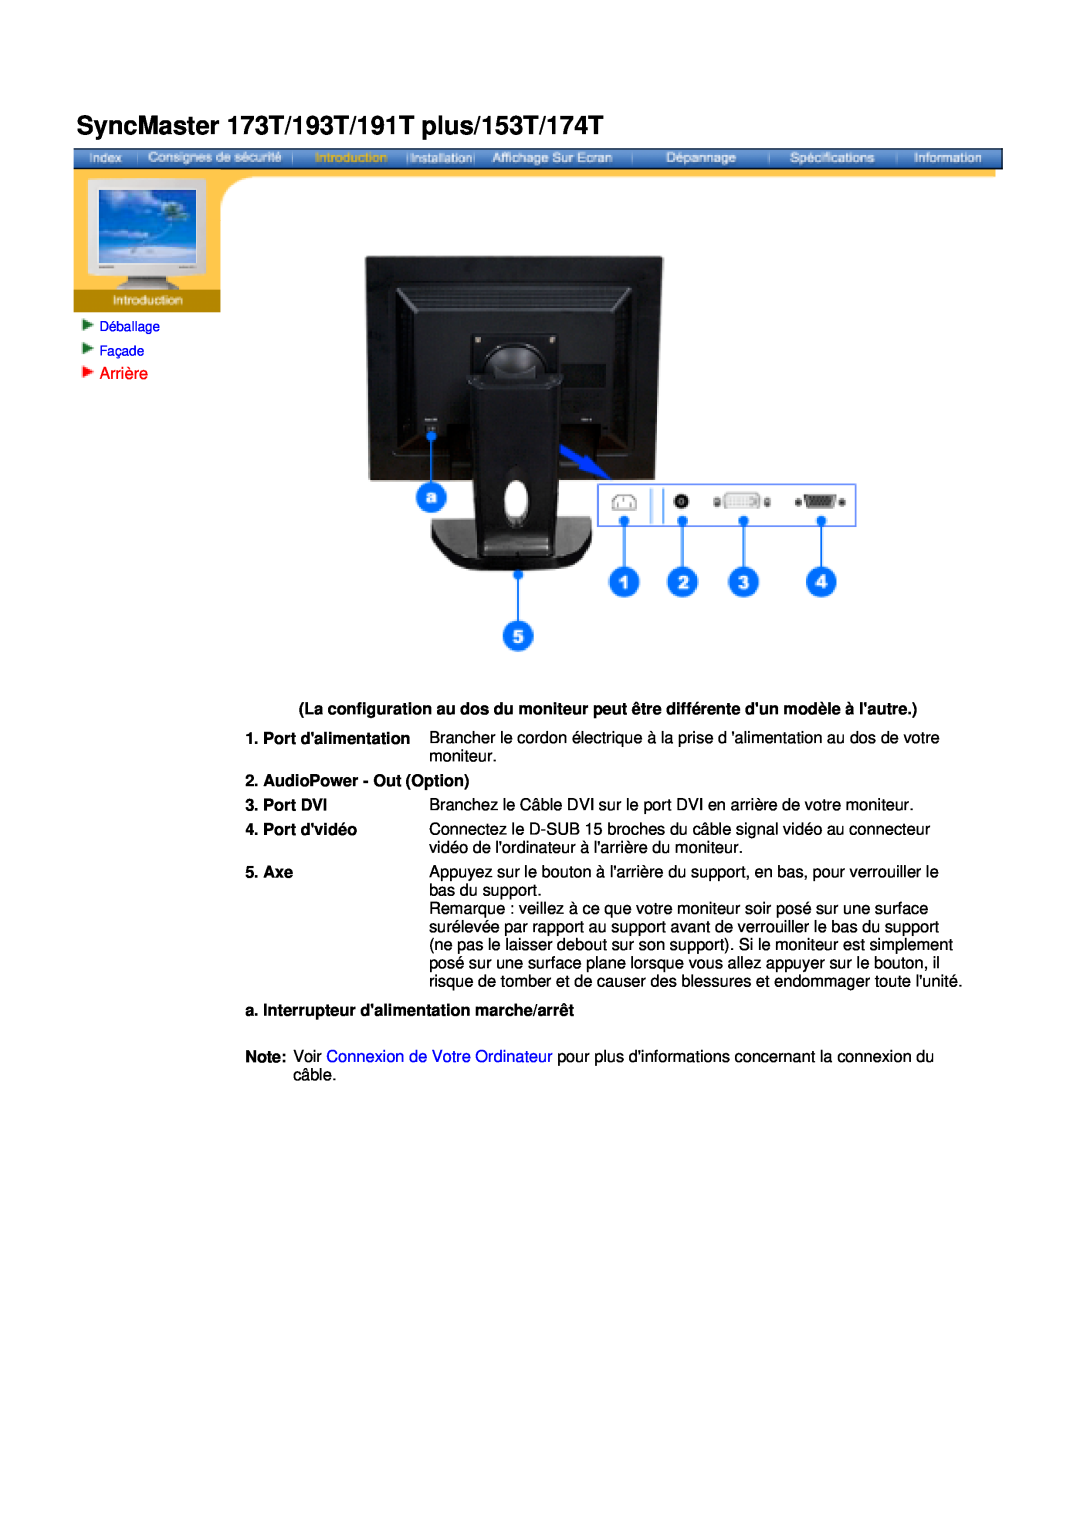 Samsung NB19BSPS/EDC Arrière, AudioPower - Out Option, Port DVI, Port dvidéo, a. Interrupteur dalimentation marche/arrêt 